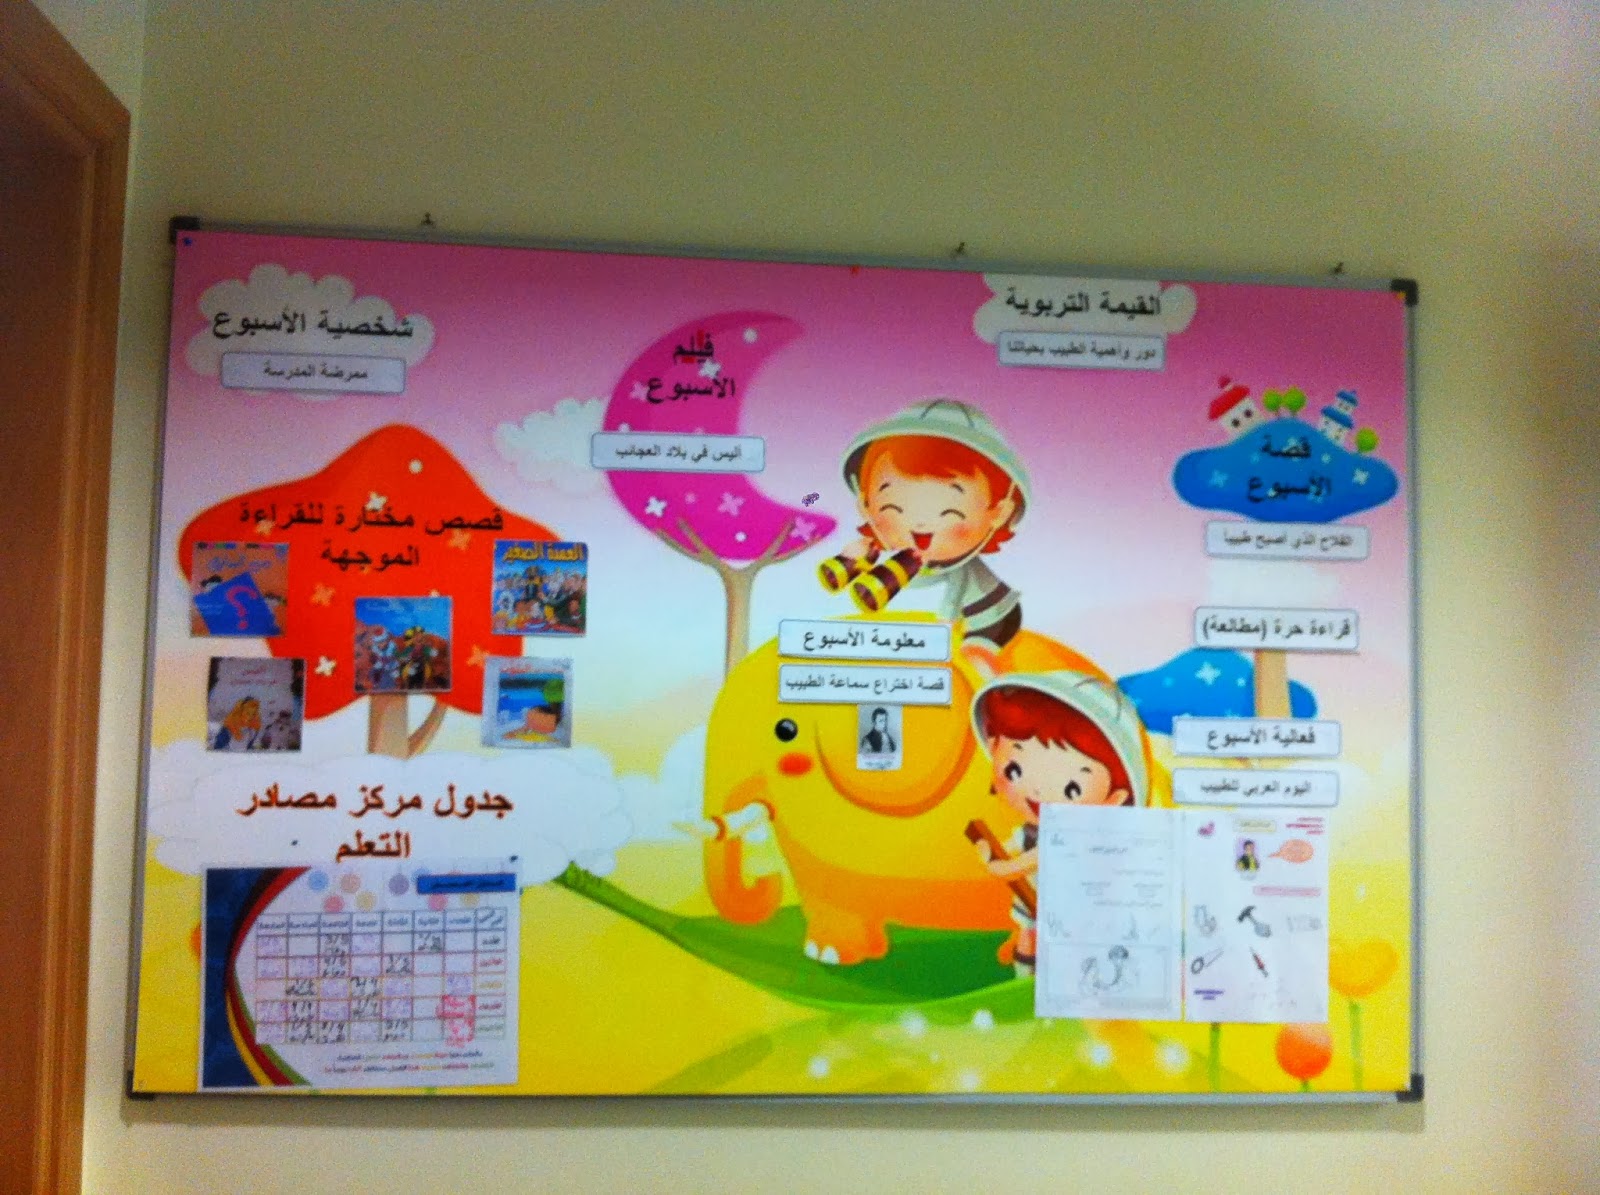  مركز مصادر التعلم بمدرسة مهرة بنت أحمد